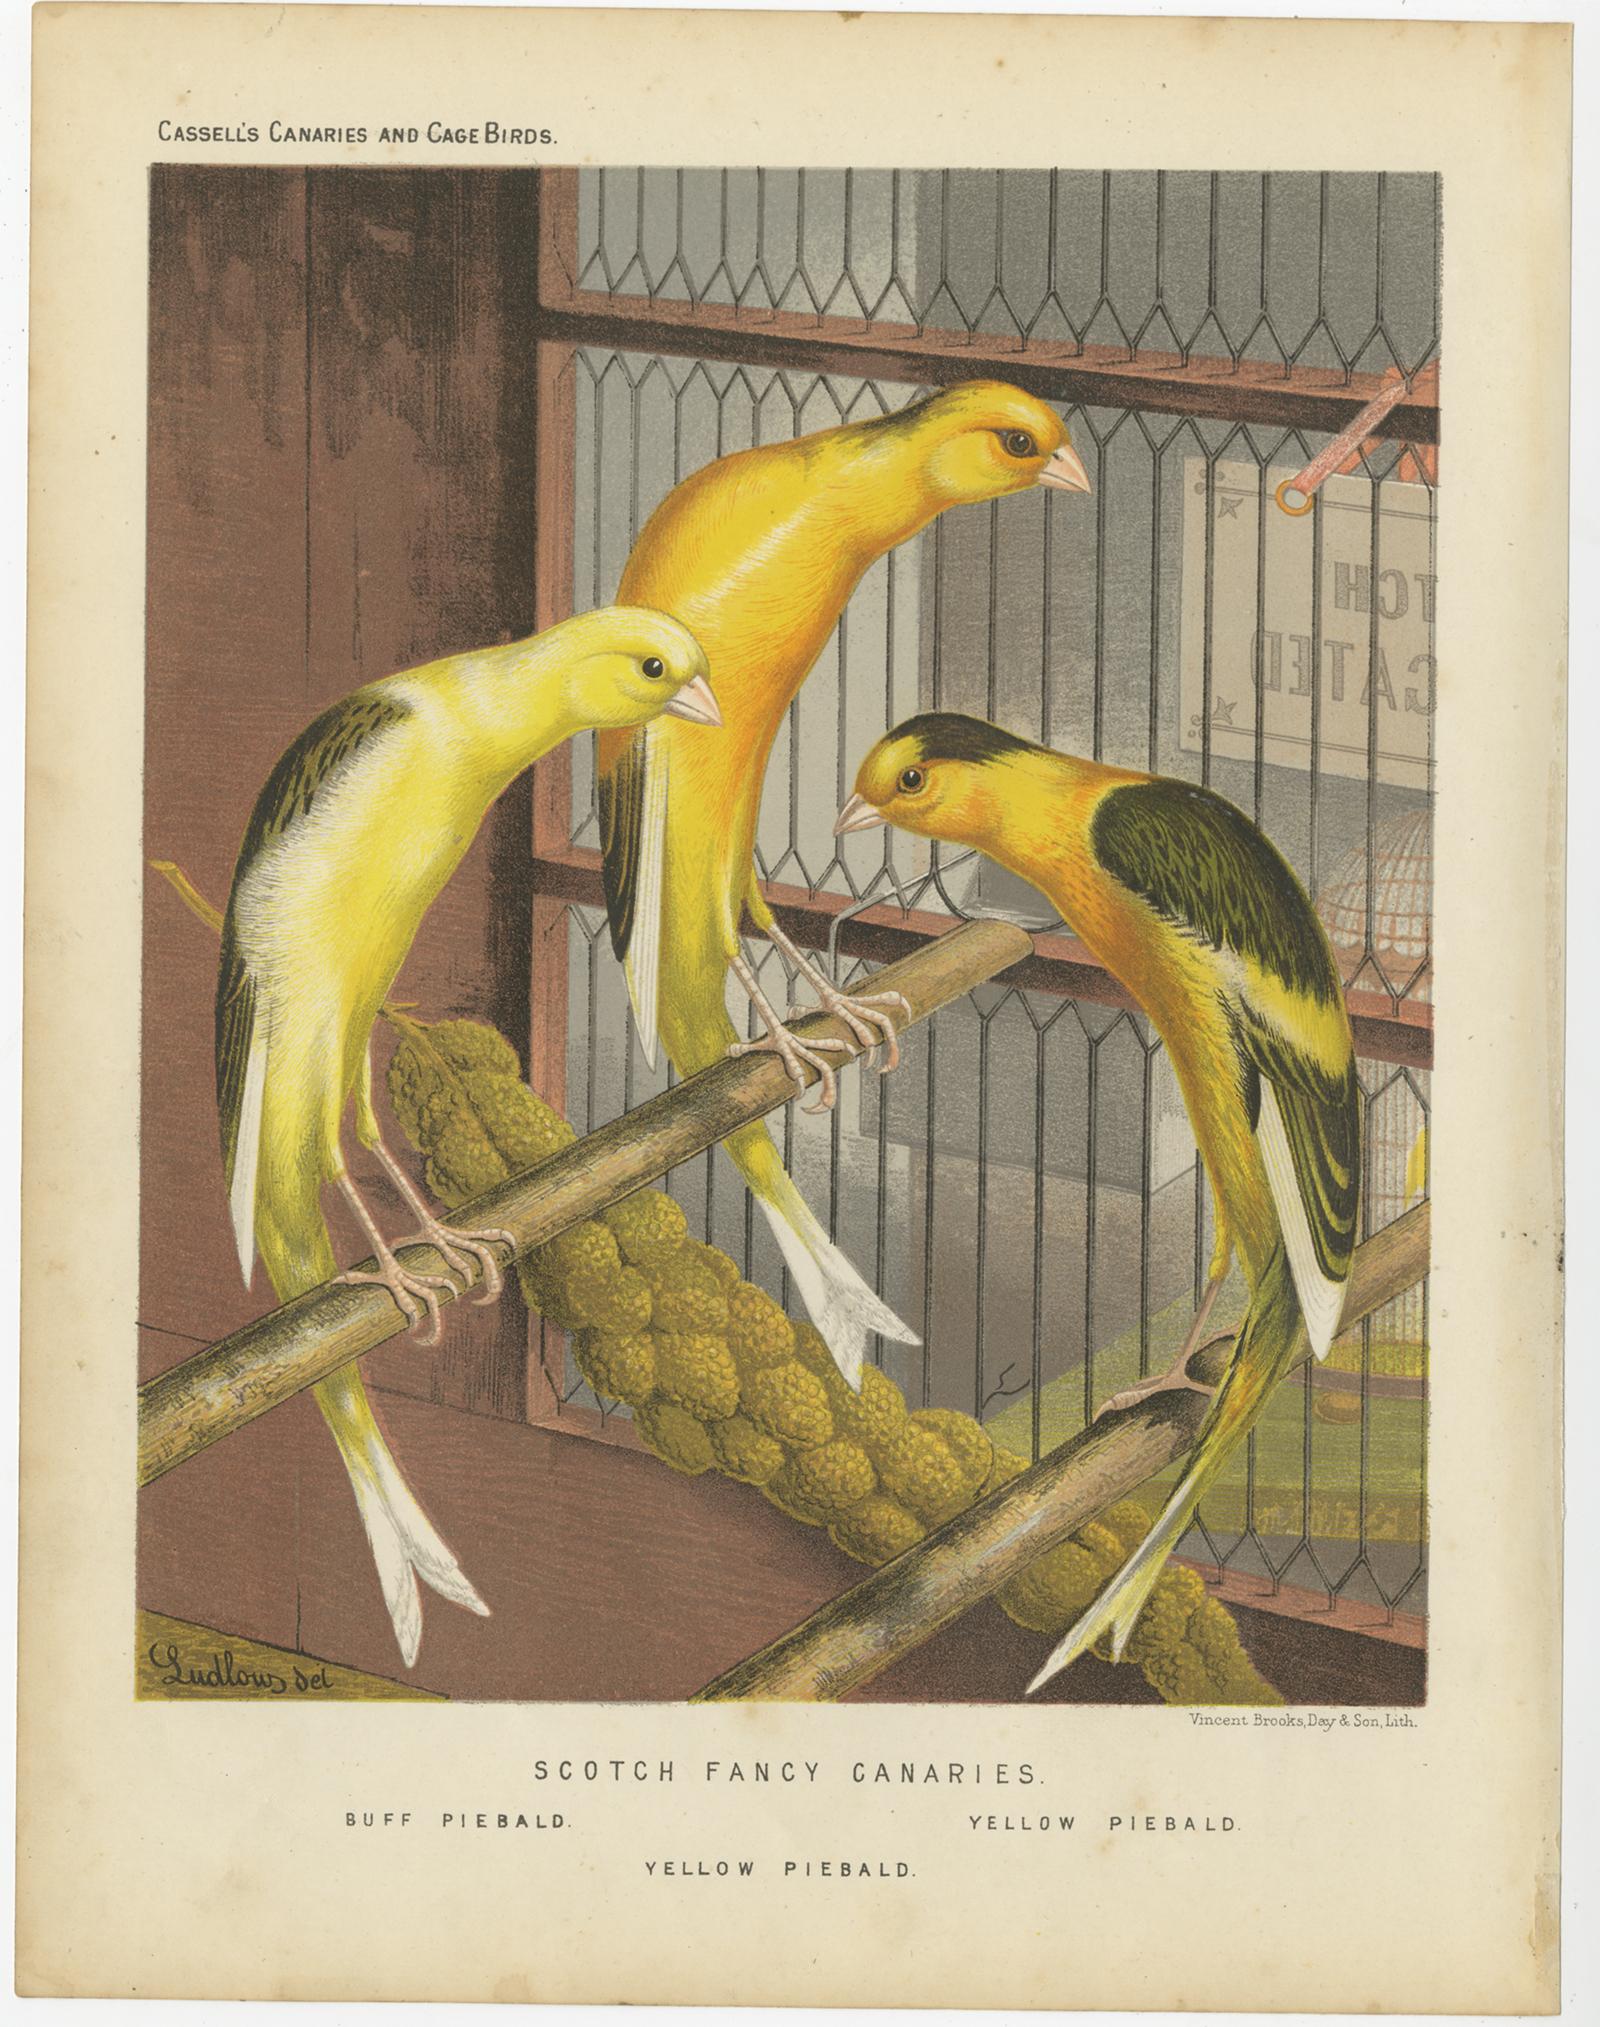 Antiker Vogeldruck mit dem Titel 'Scotch Fancy Canaries 1. Buff Piebald 2. Yellow Piebald 3. Yellow Piebald' Alter Vogeldruck mit Darstellung der Buff Piebald, Yellow Piebald, Yellow Piebald'. Dieser Druck stammt aus: 'Illustrated book of canaries